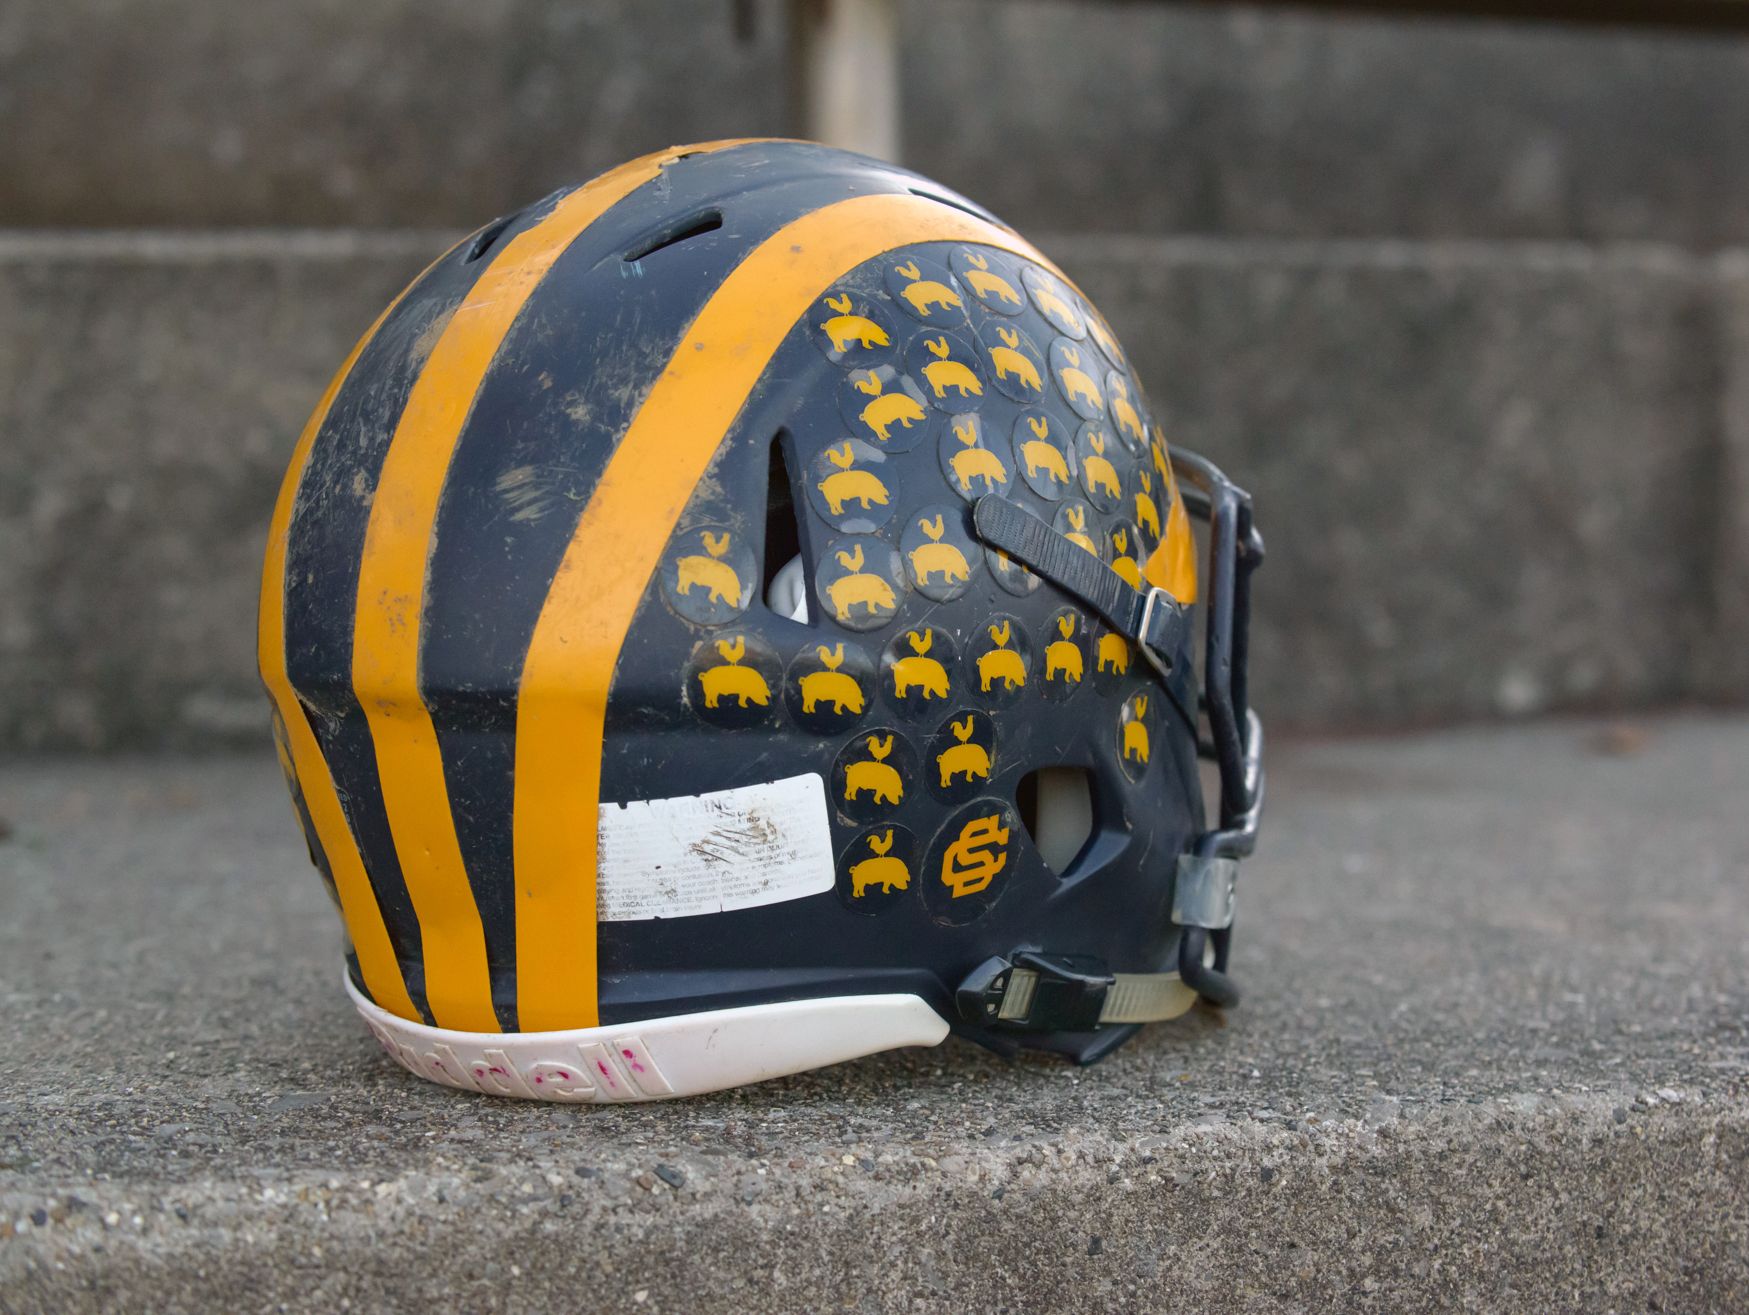 A Climax - Scotts football helmet